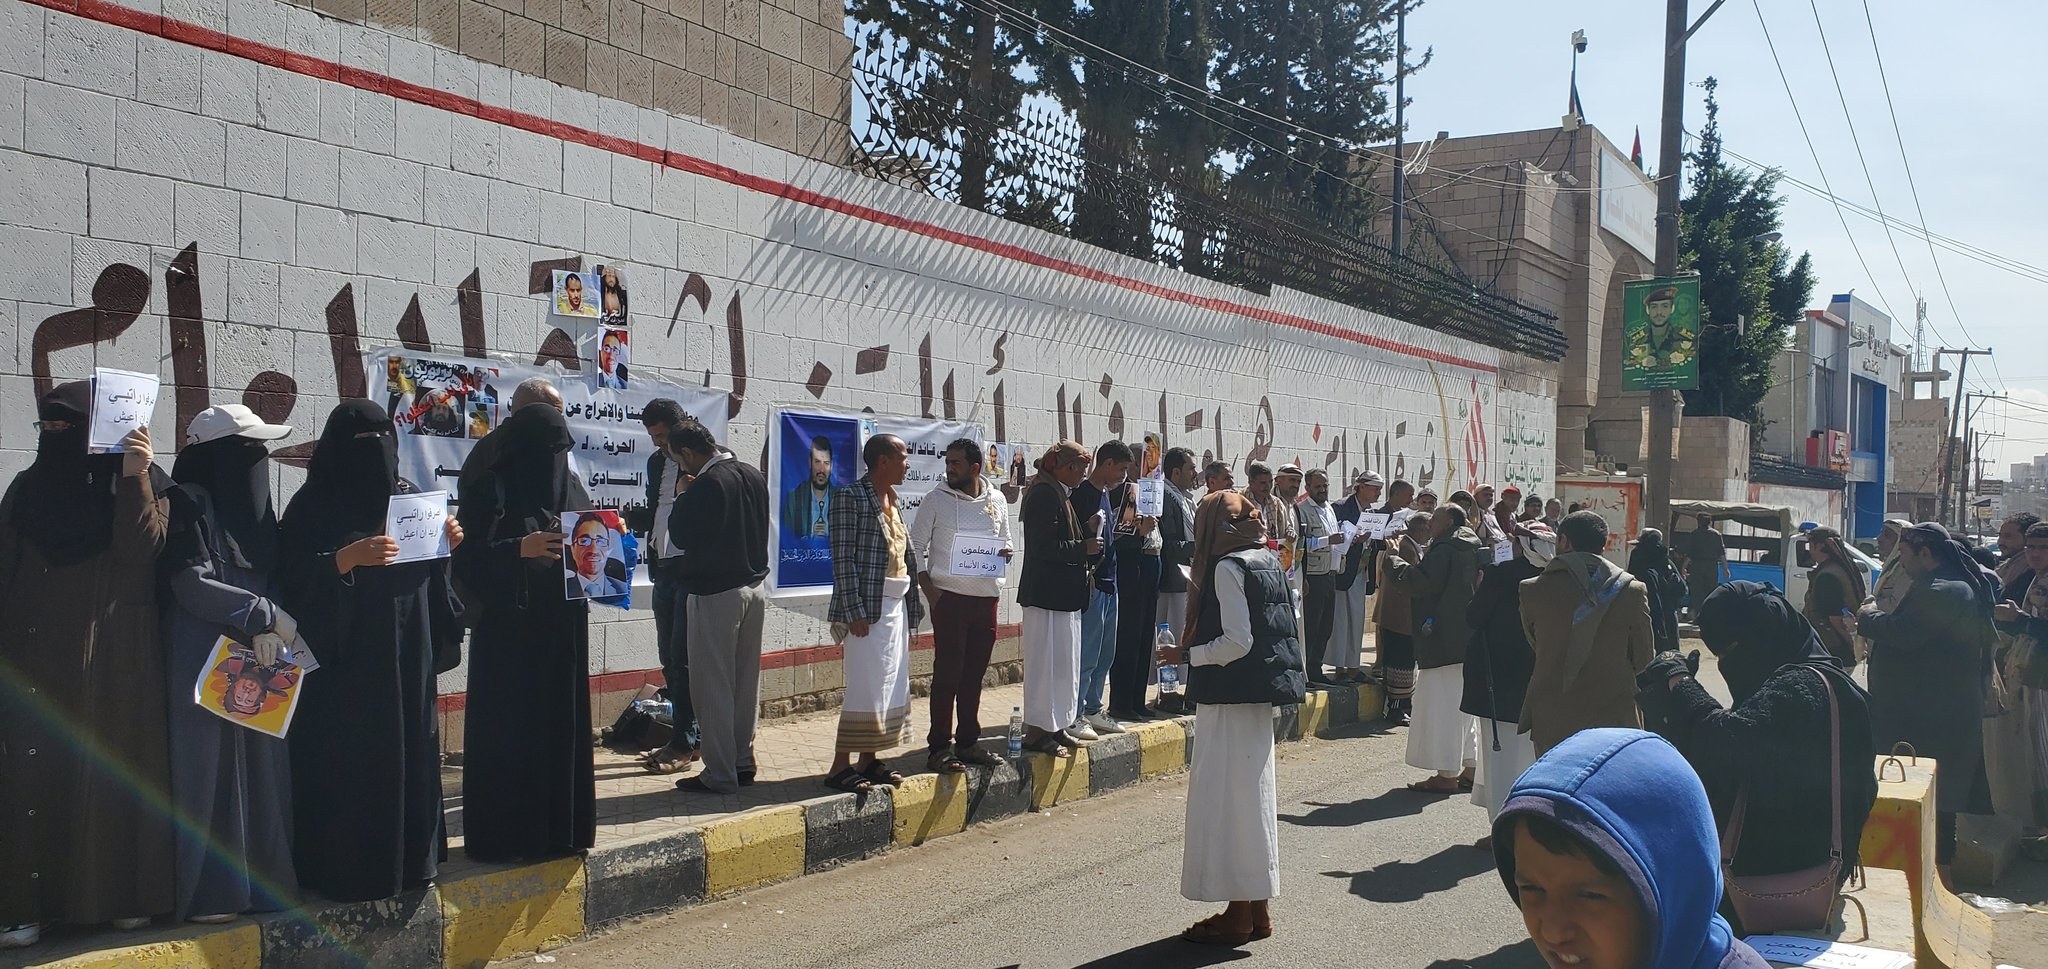 ﻿بعد 4 أشهر من الإخفاء القسري.. نادي المعلمين يقول إن الحوثيين أحالوا رئيسه إلى المحكمة الجزائية رغم تدهور حالته الصحية